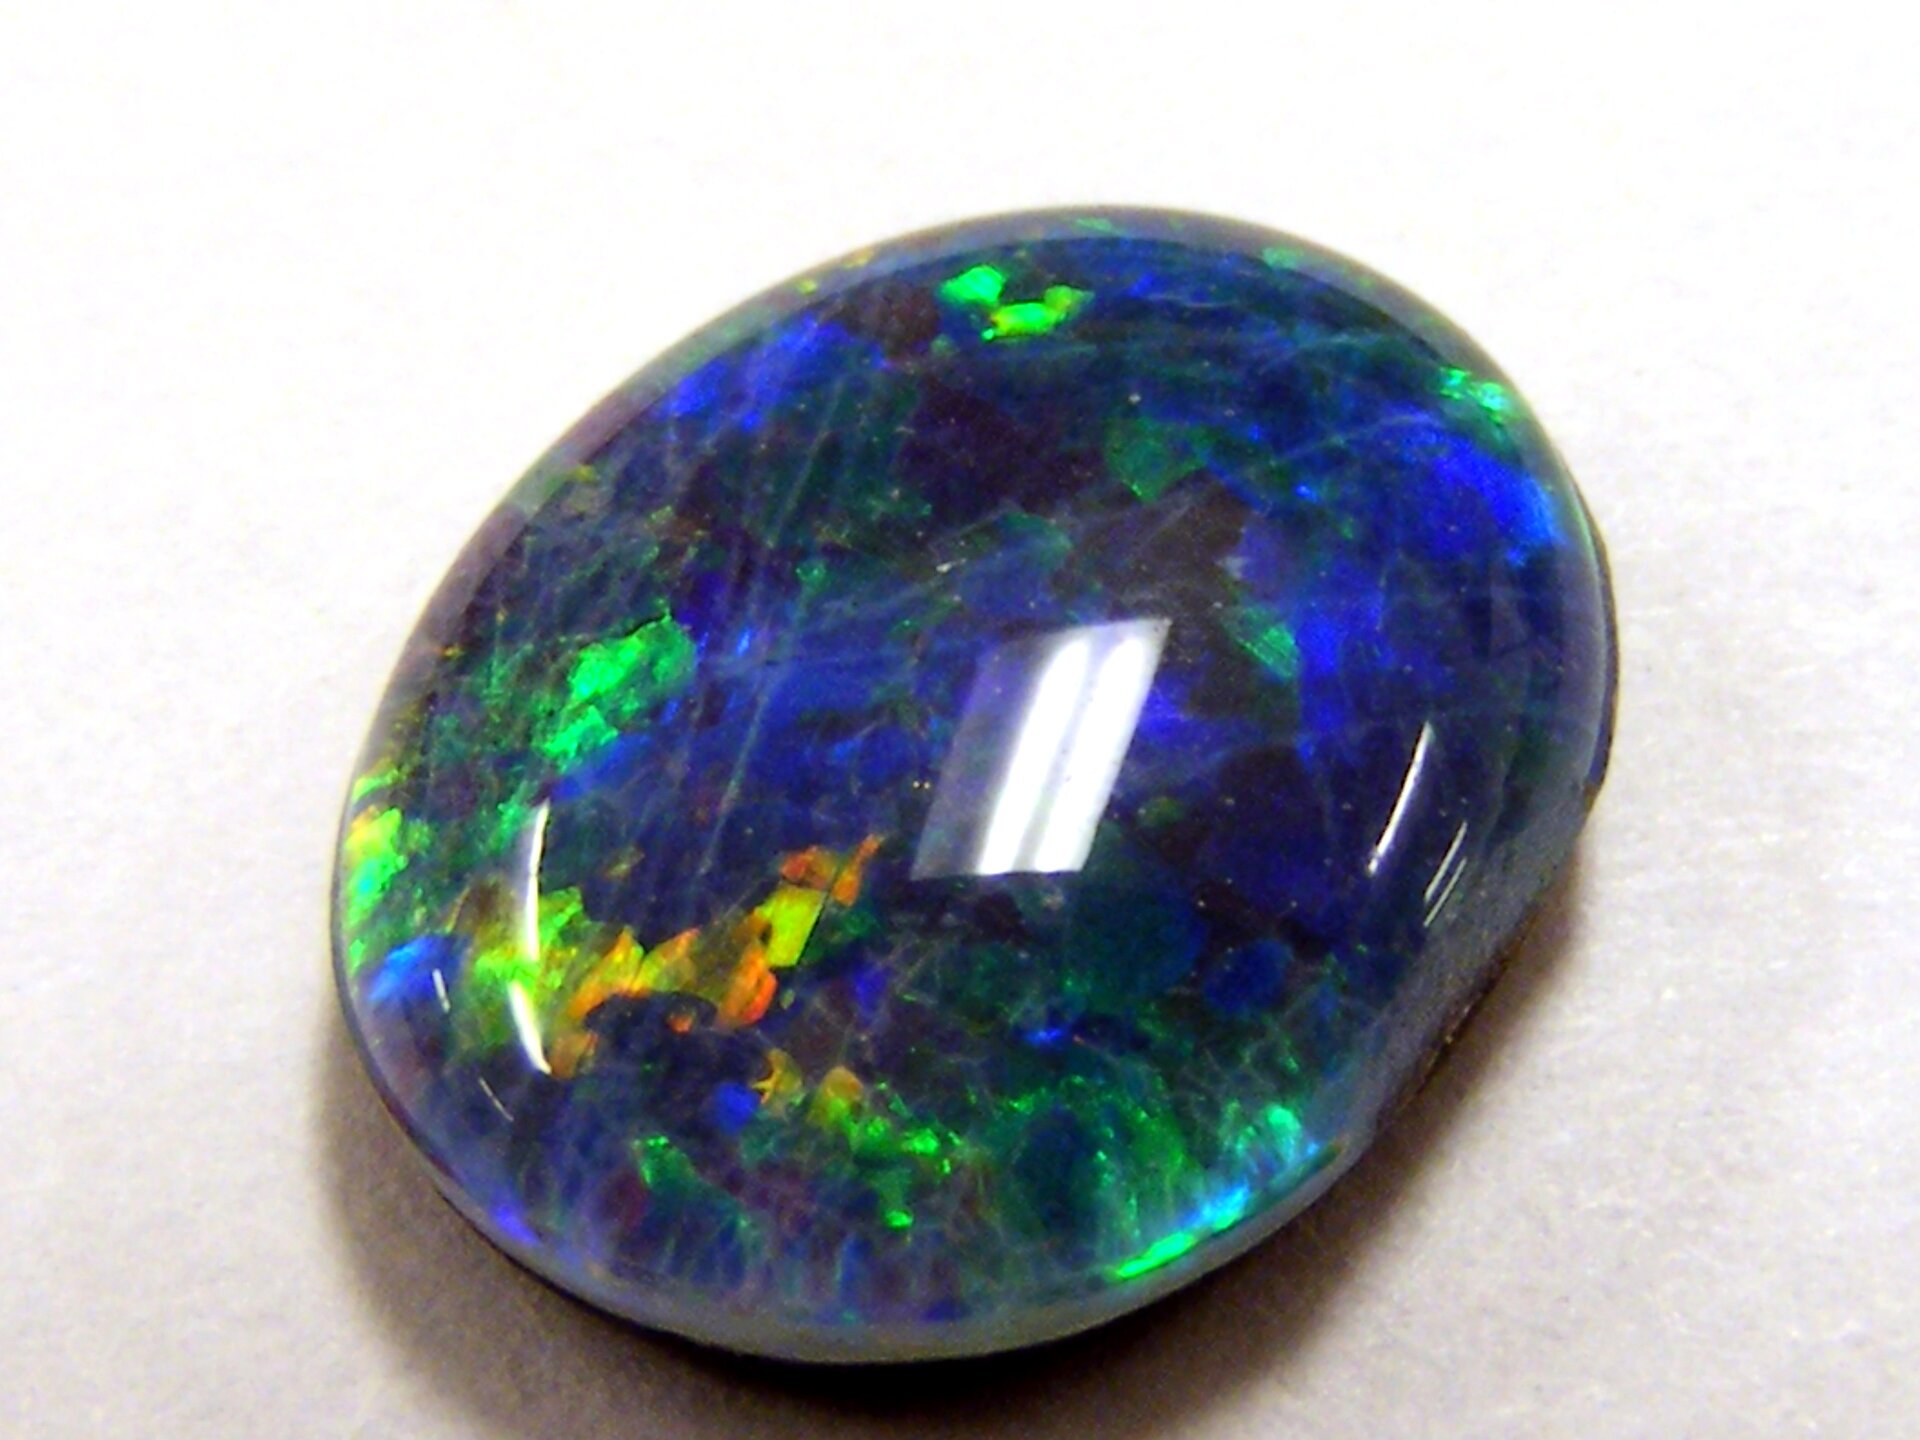 Zdjęcie przedstawia oszlifowany opal niebieski w odmianie szlachetnej, czyli opalizującej, co oznacza zmienność barw w zależności od kąta obserwacji. Szlif owalny, kamień ma formę nieco spłaszczonej kropli.